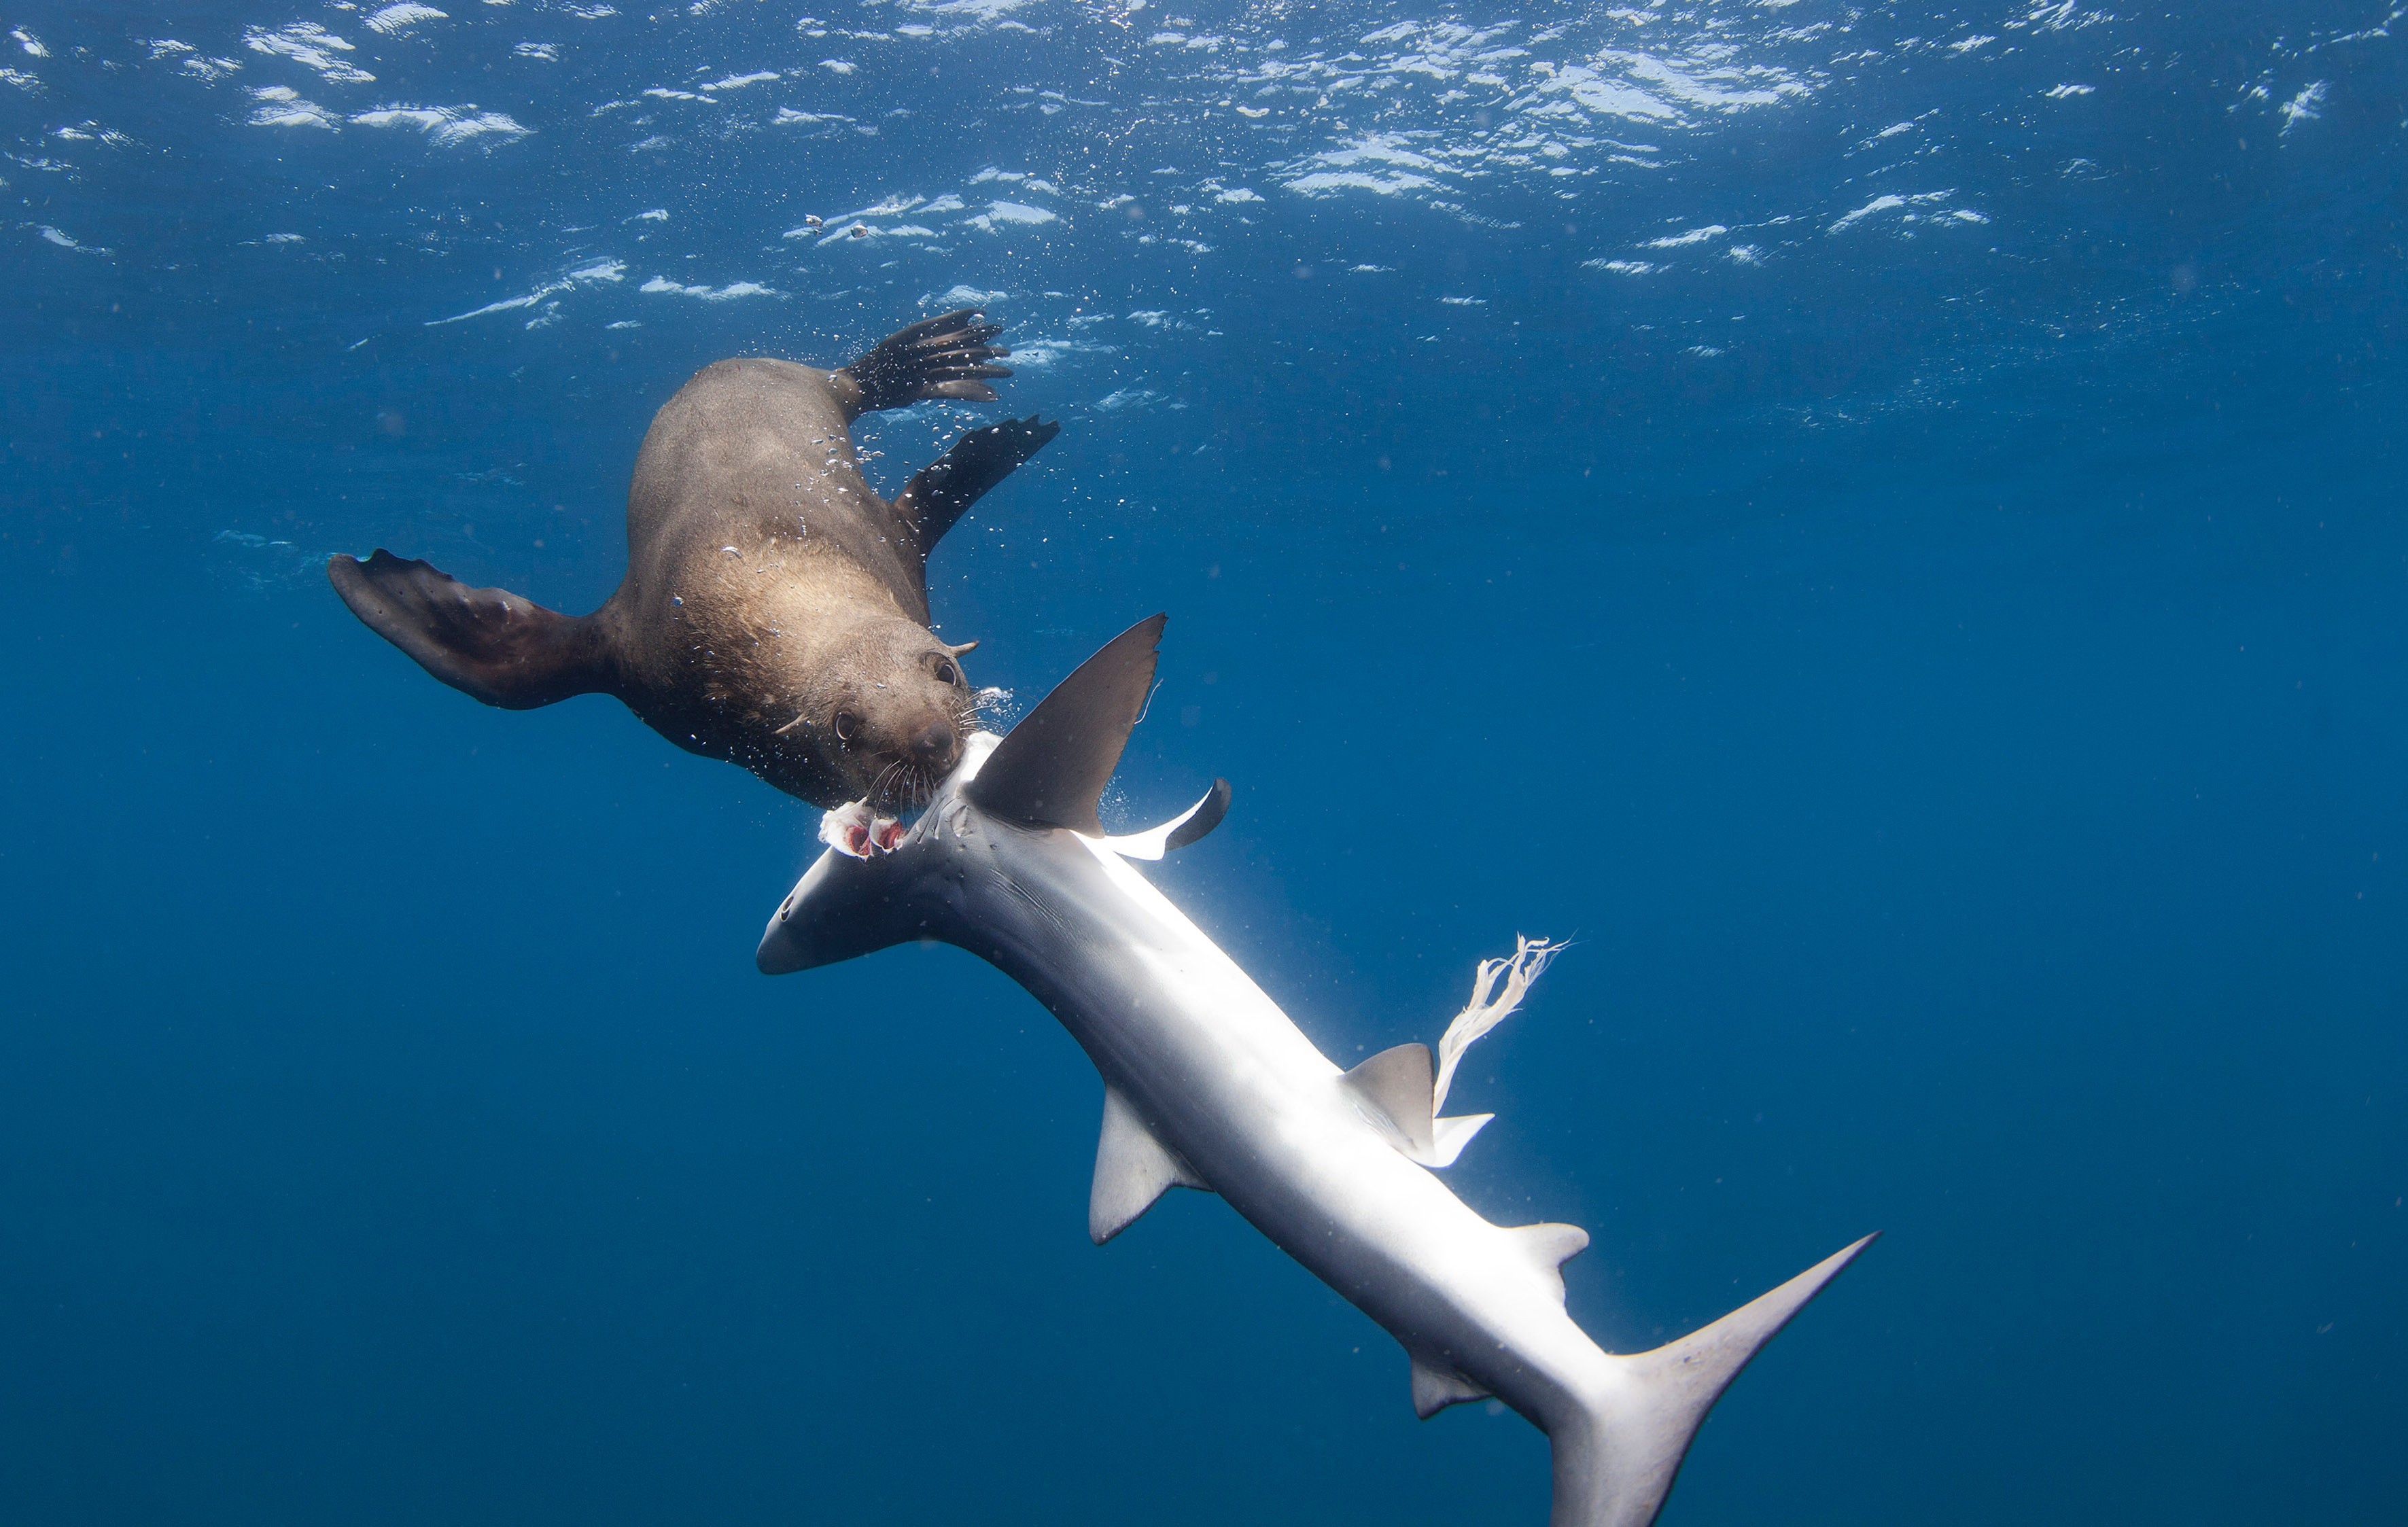 Un requin lui attrape la jambe, il vit quinze minutes surréalistes